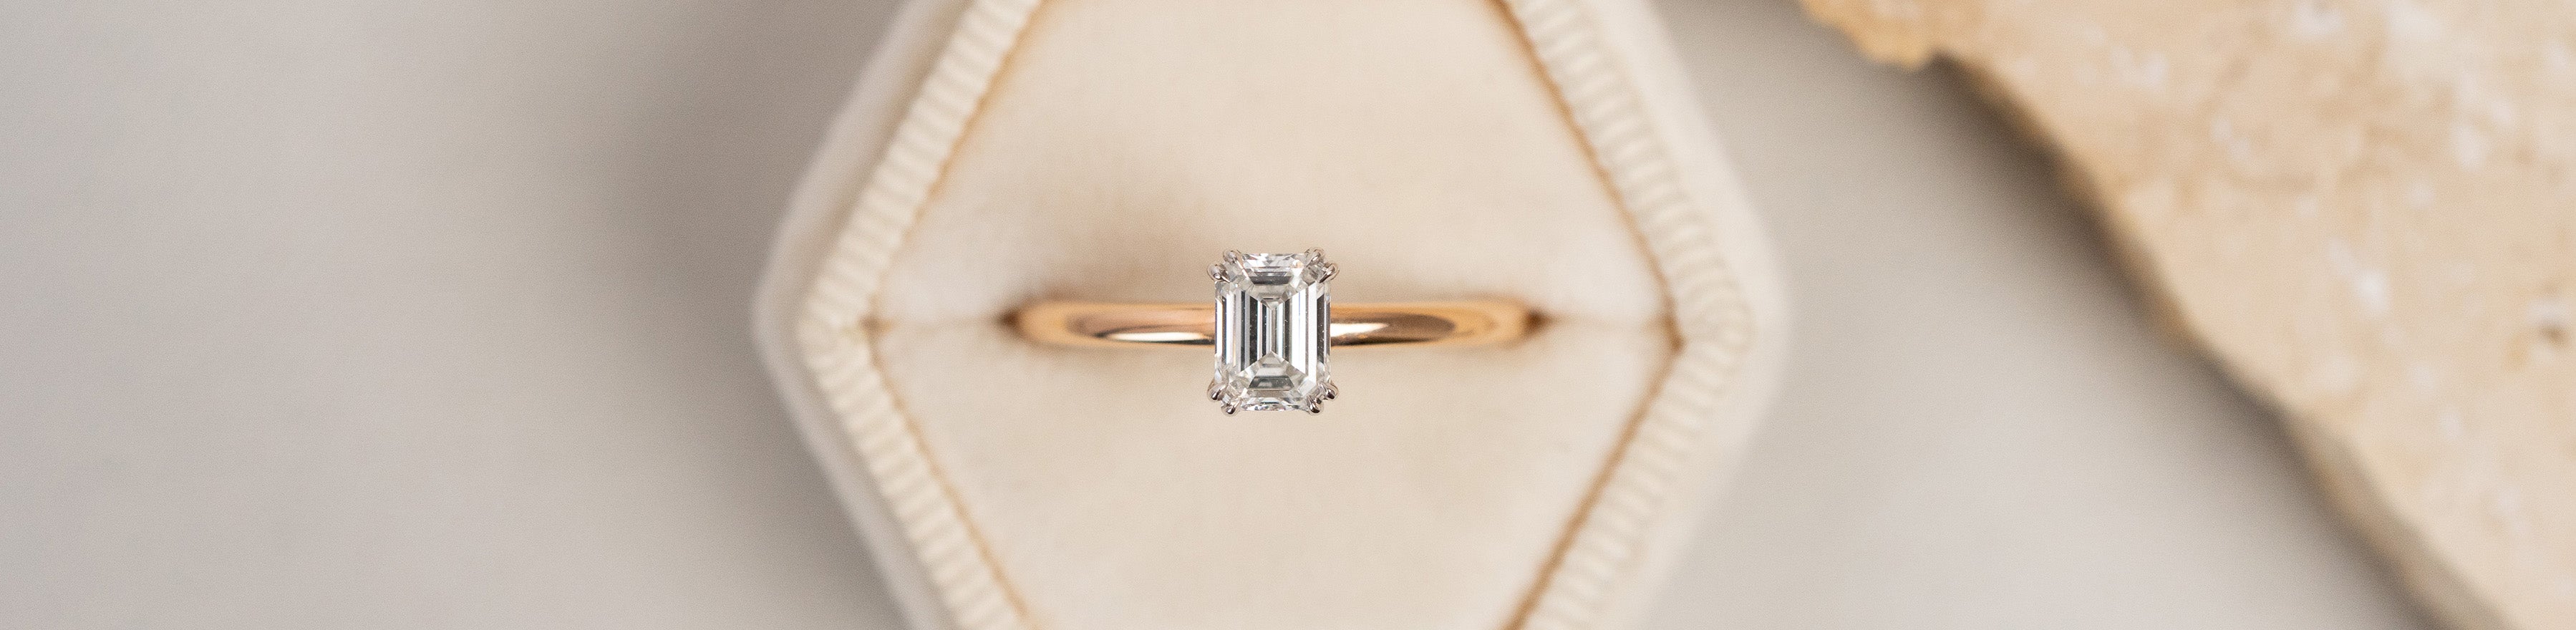 Precious Gemstone: Diamond